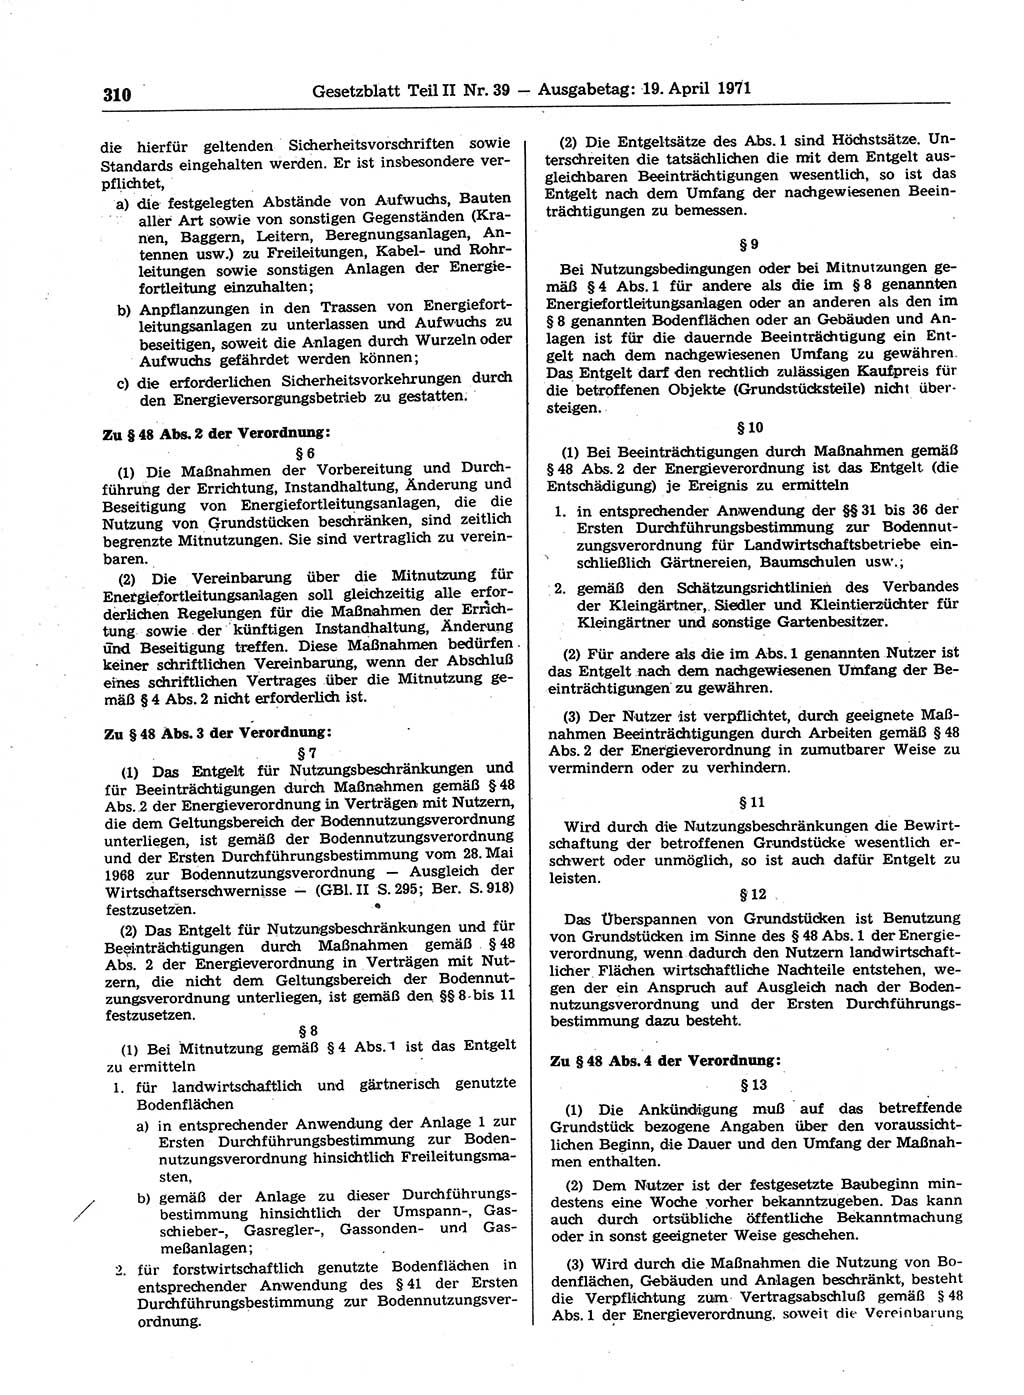 Gesetzblatt (GBl.) der Deutschen Demokratischen Republik (DDR) Teil ⅠⅠ 1971, Seite 310 (GBl. DDR ⅠⅠ 1971, S. 310)